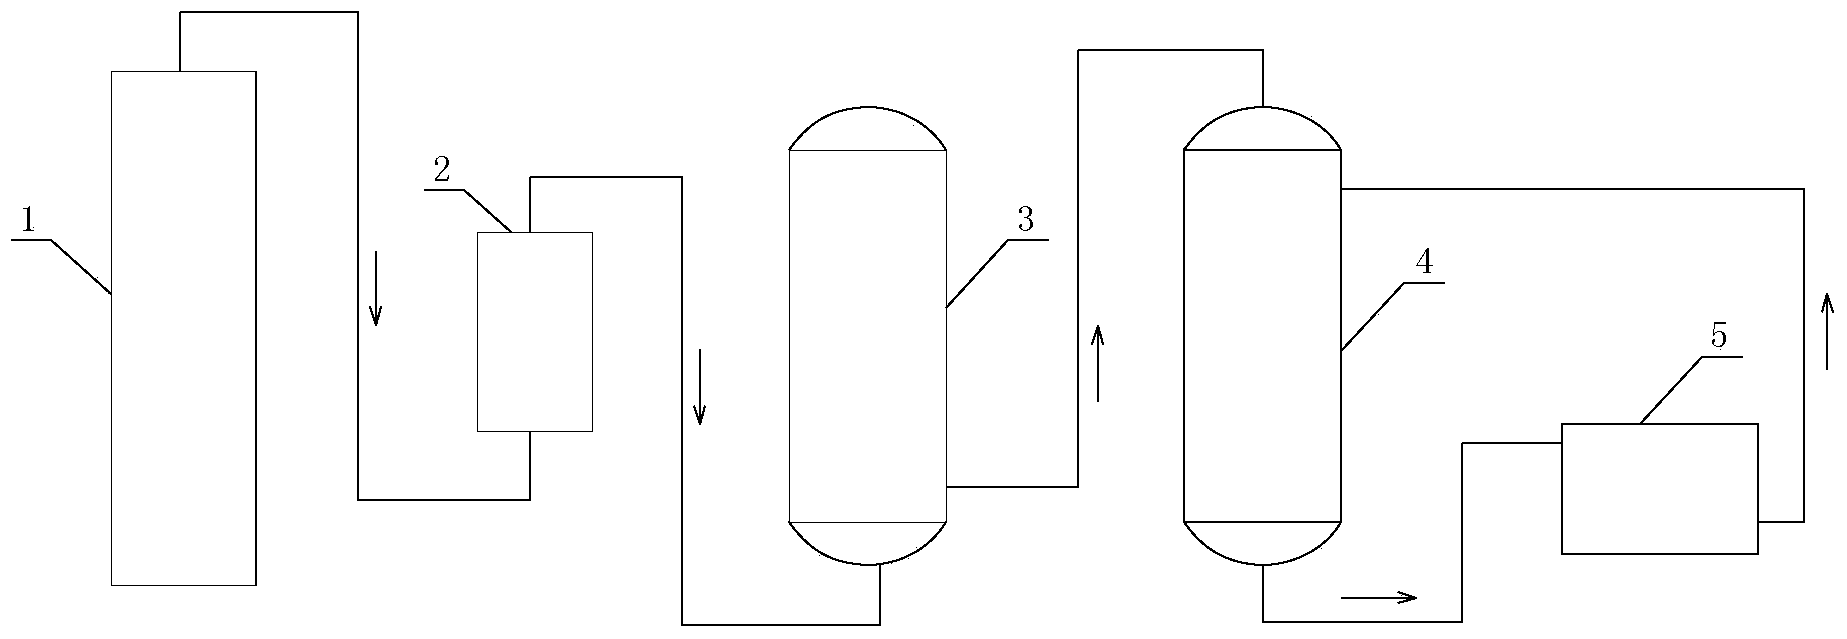 Method for preparing 5-(2-methylmercapto-ethyl)-hydantoin by utilizing crude hydrocyanic acid gas